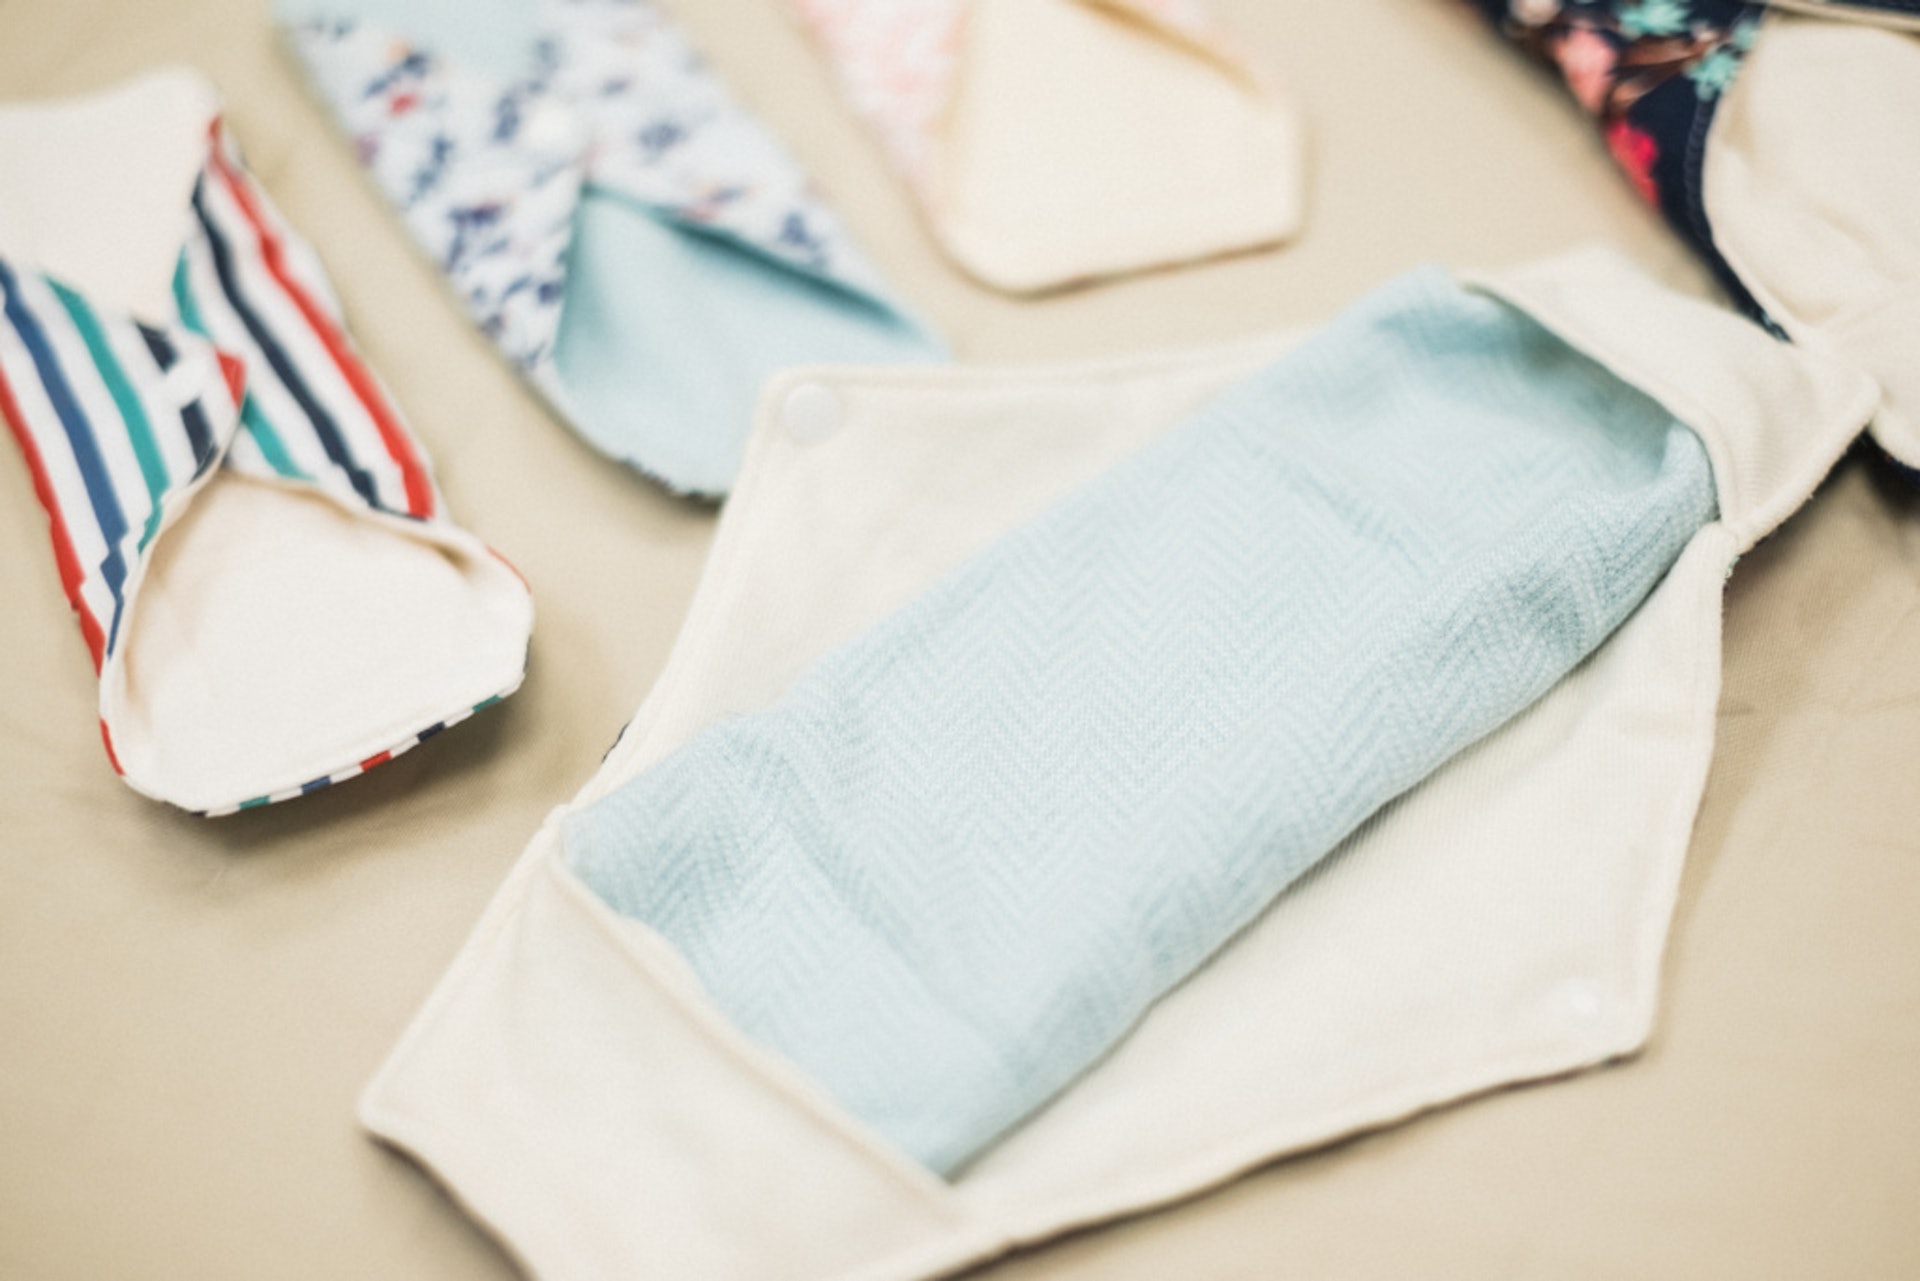 製作布衛生巾出售後，Zoe會與縫紉隊分成利潤，藉此推廣環保月事產品訊息。